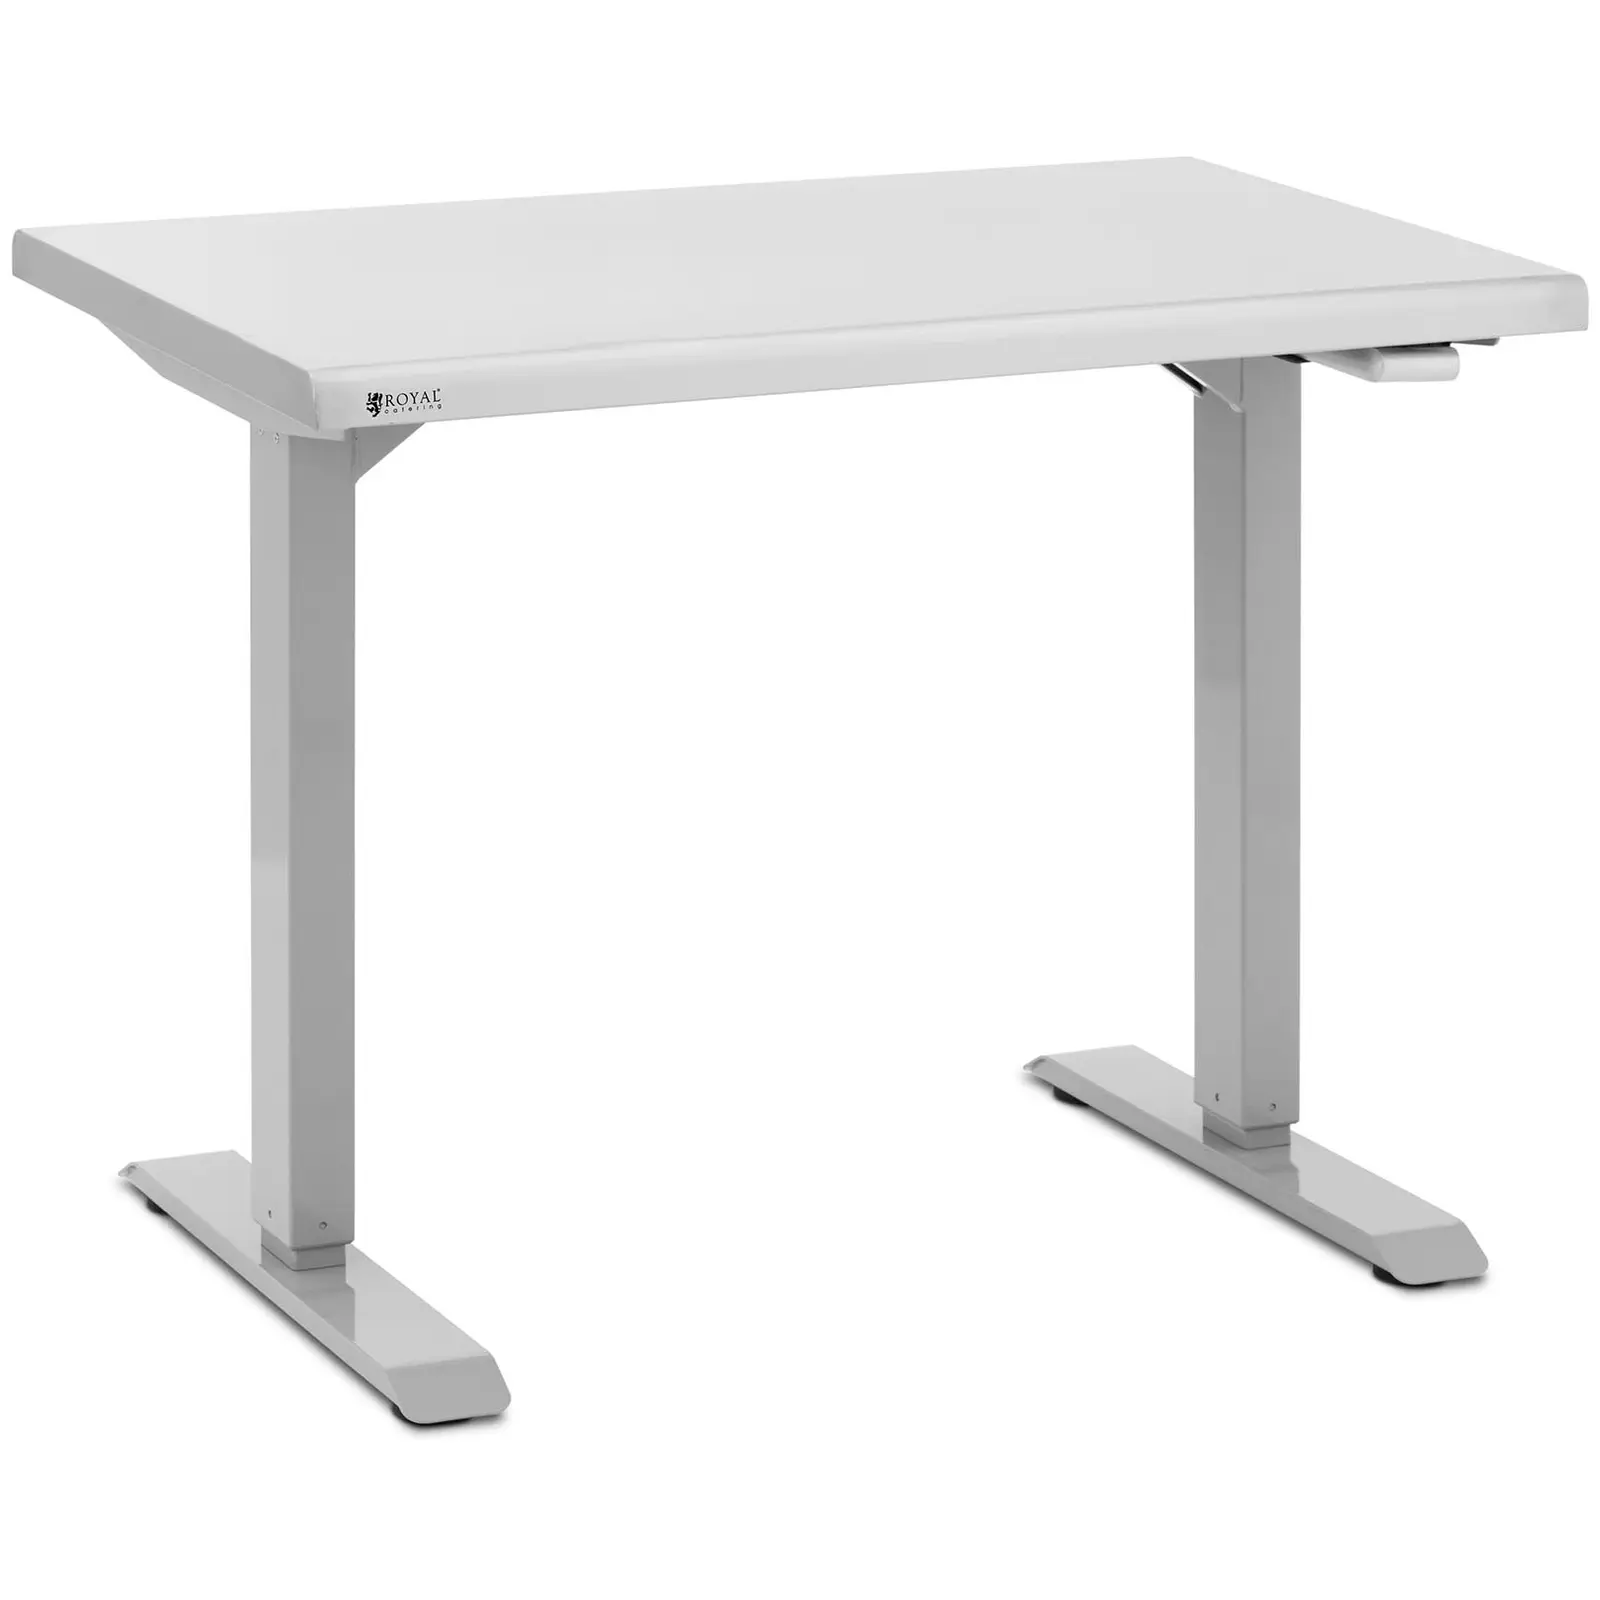 Stôl z nehrdzavejúcej ocele - výškovo nastaviteľný - 96 x 60 x 71,5 – 117 cm - nosnosť 70 kg - Royal Catering